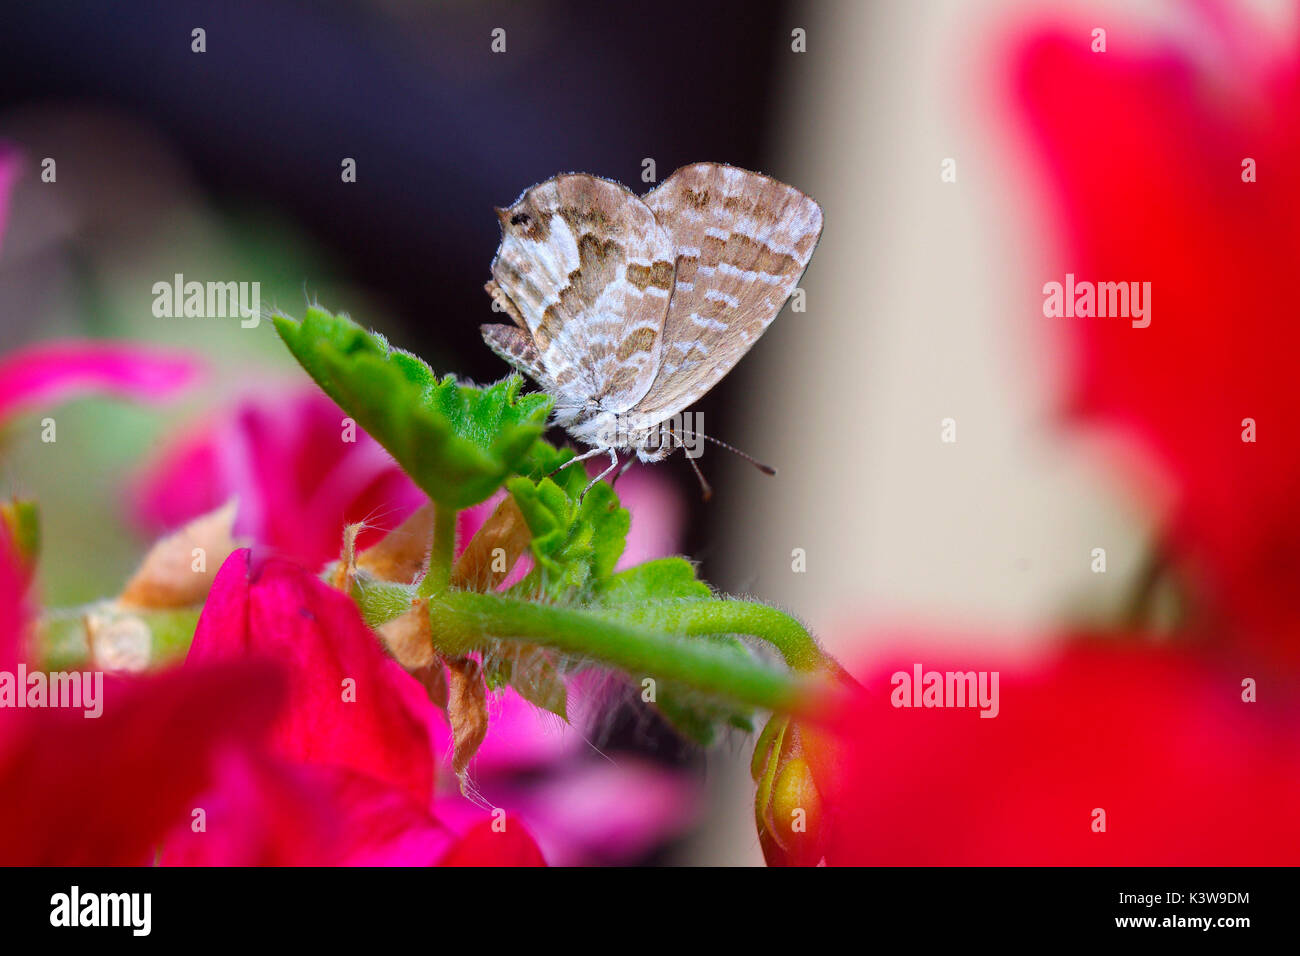 Cacyreus marshalli, exóticas especies de mariposas que procede de África, sobre una hoja de geranio Foto de stock